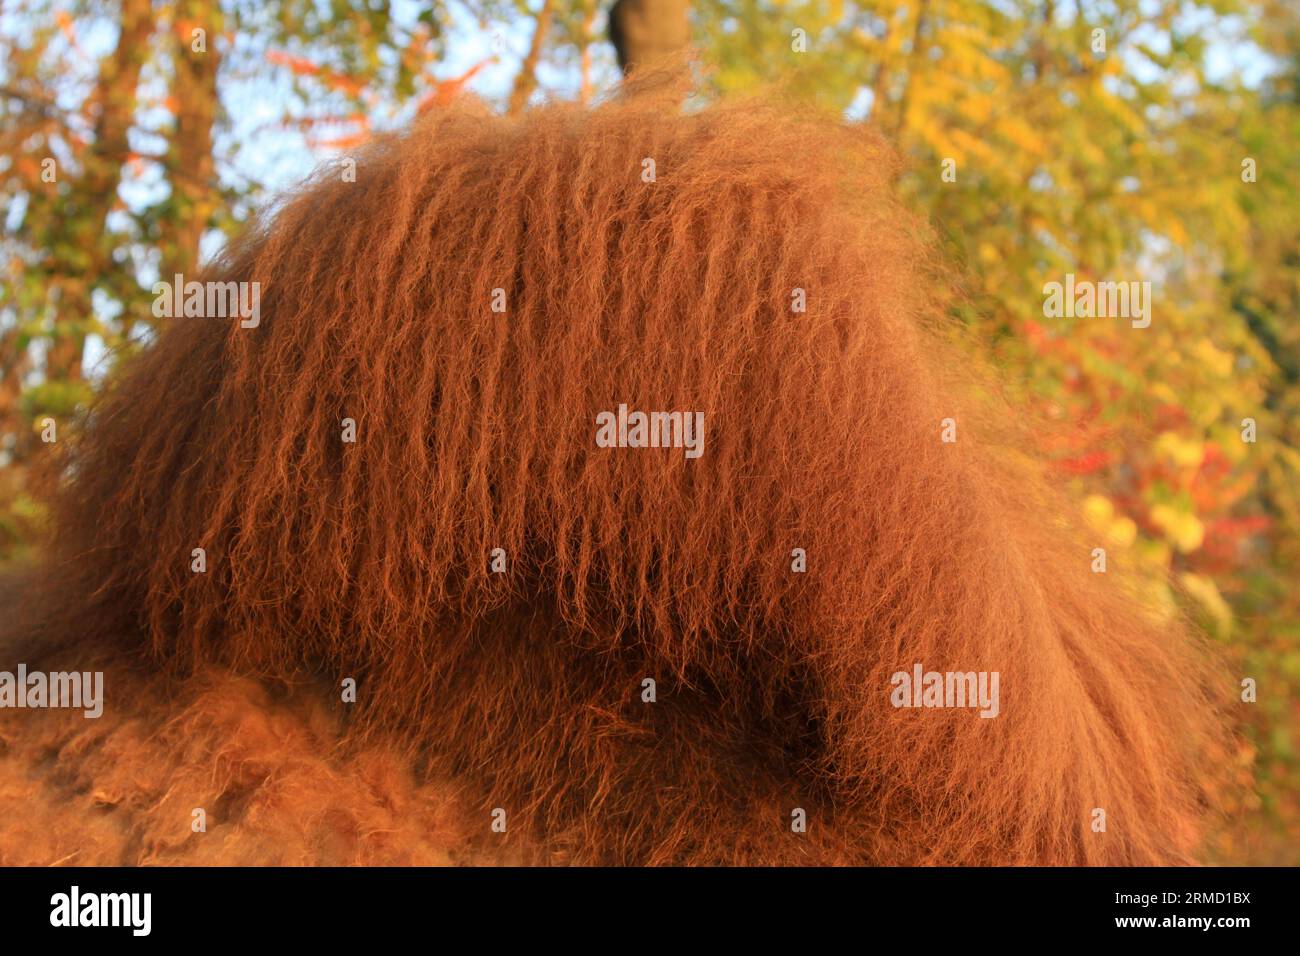 closeup of Camel's hump, closeup of photo Stock Photo